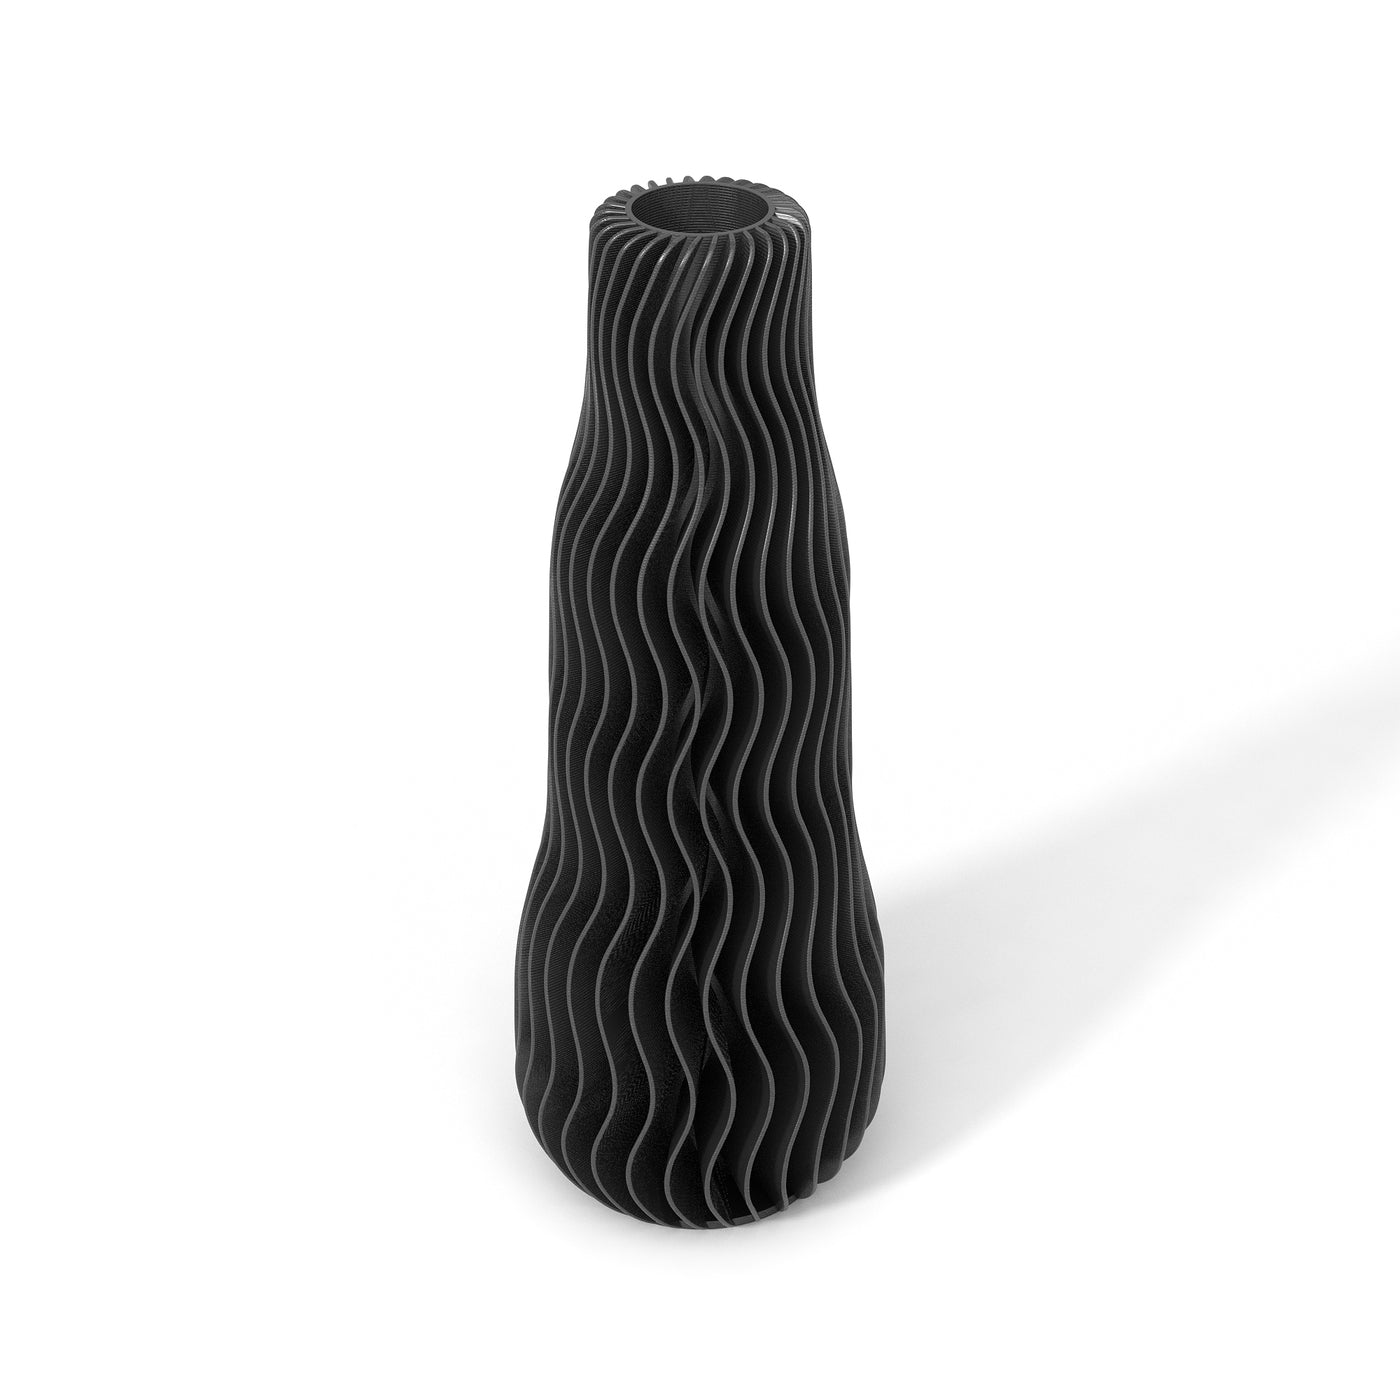 Černá designová váza 3D print WAVE 1